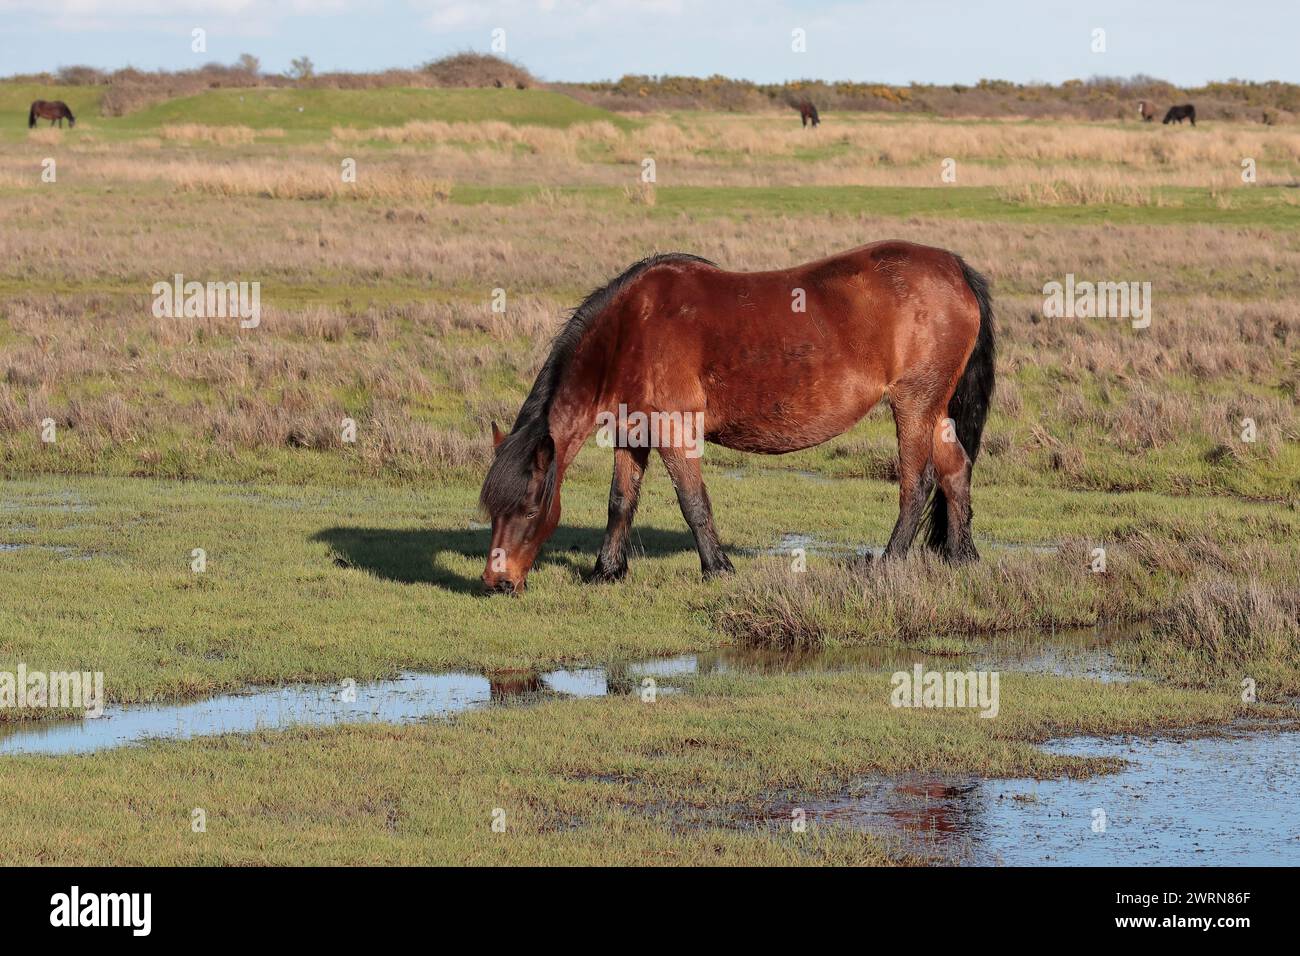 Un pony marrón del Nuevo Bosque comiendo hierba en un campo abierto con el mar y otros cuatro ponis en el fondo, mirando a la izquierda. Foto de stock